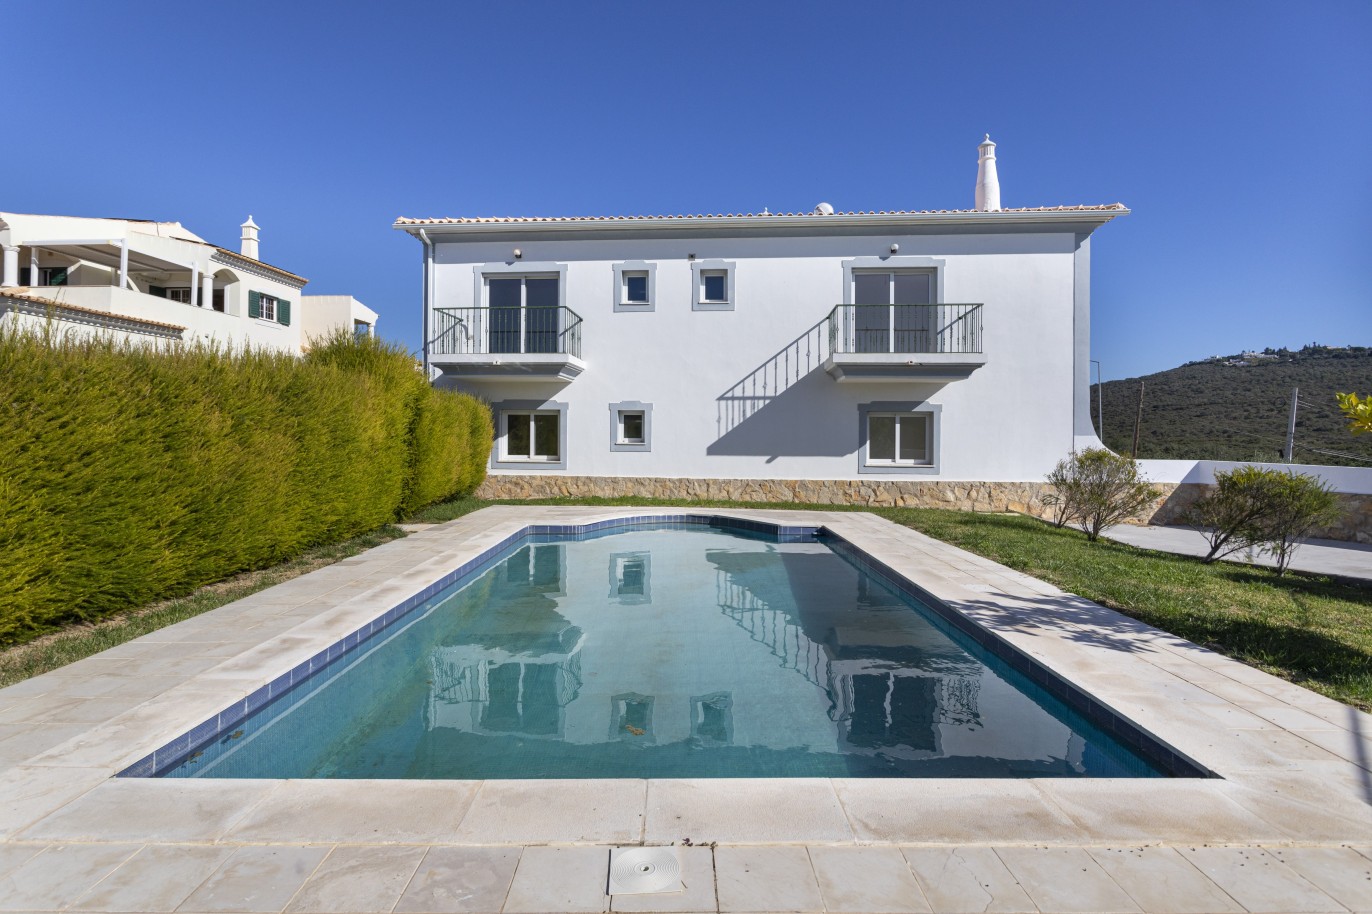 Nova moradia V4 geminada com piscina, para venda em Loulé, Algarve_246578